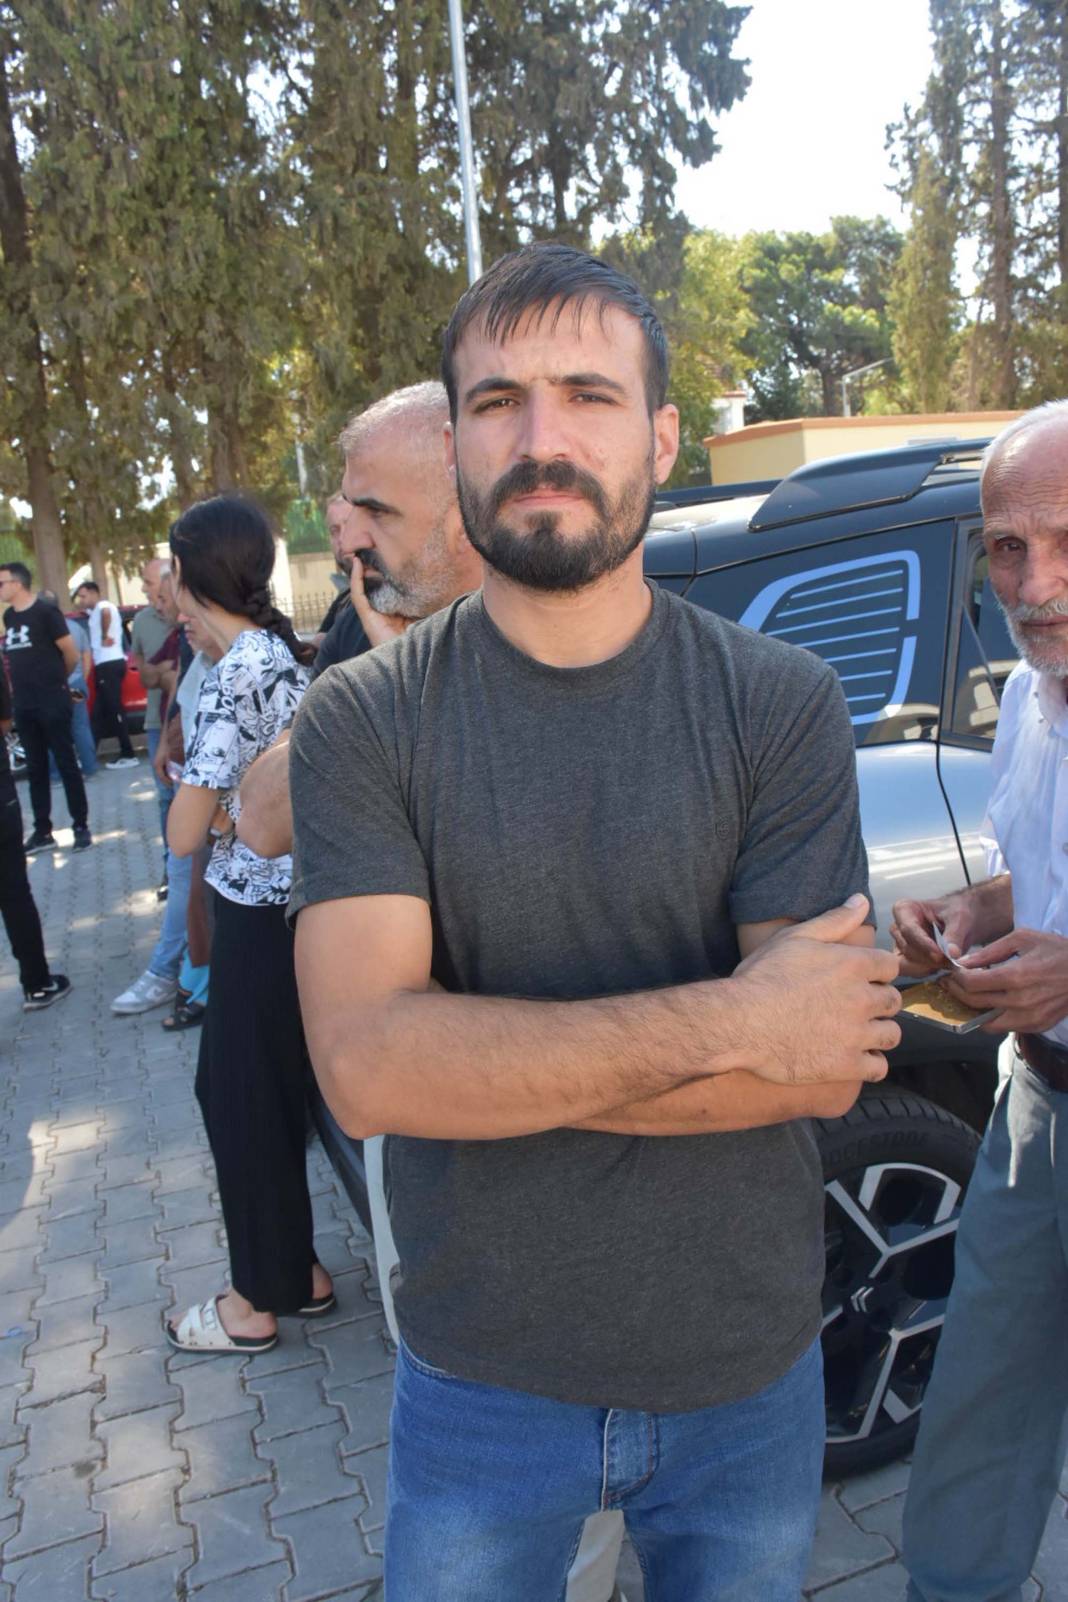 İzmir’deki faciada kahreden detaylar: Kimi kendine ayakkabı bakıyordu kimi pazara gidiyordu 11